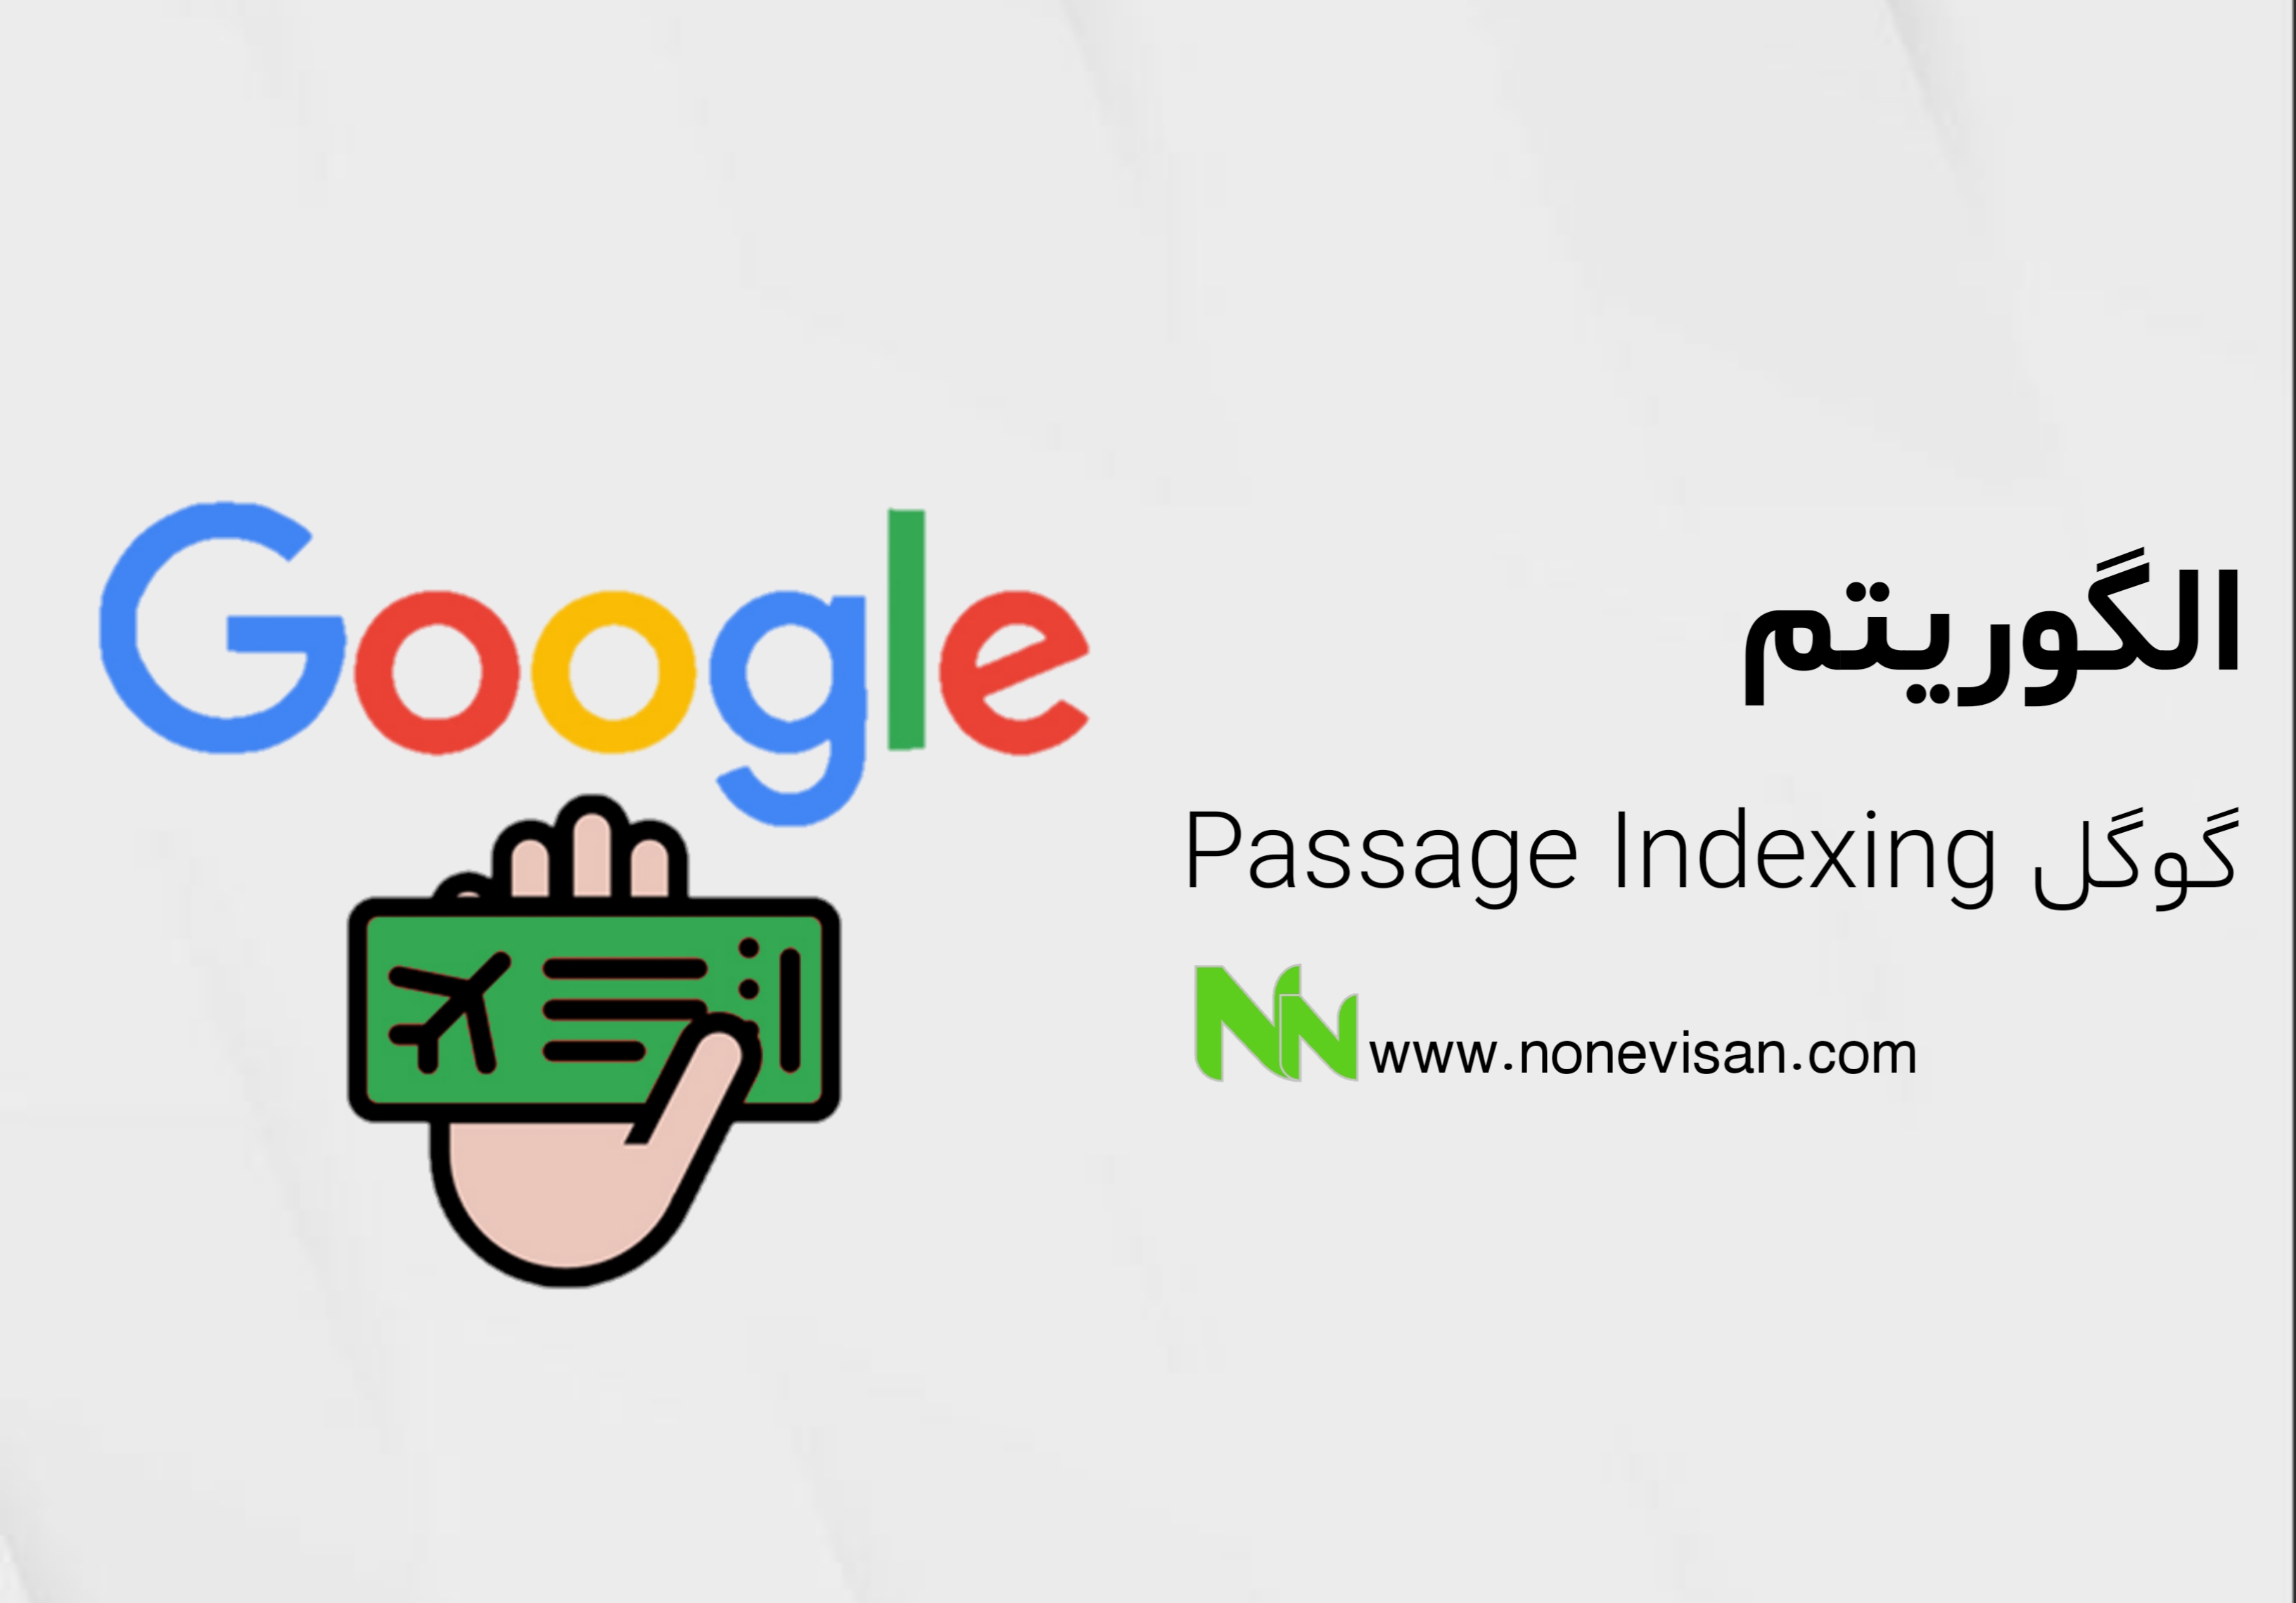 الگوریتم Passage Indexing گوگل​